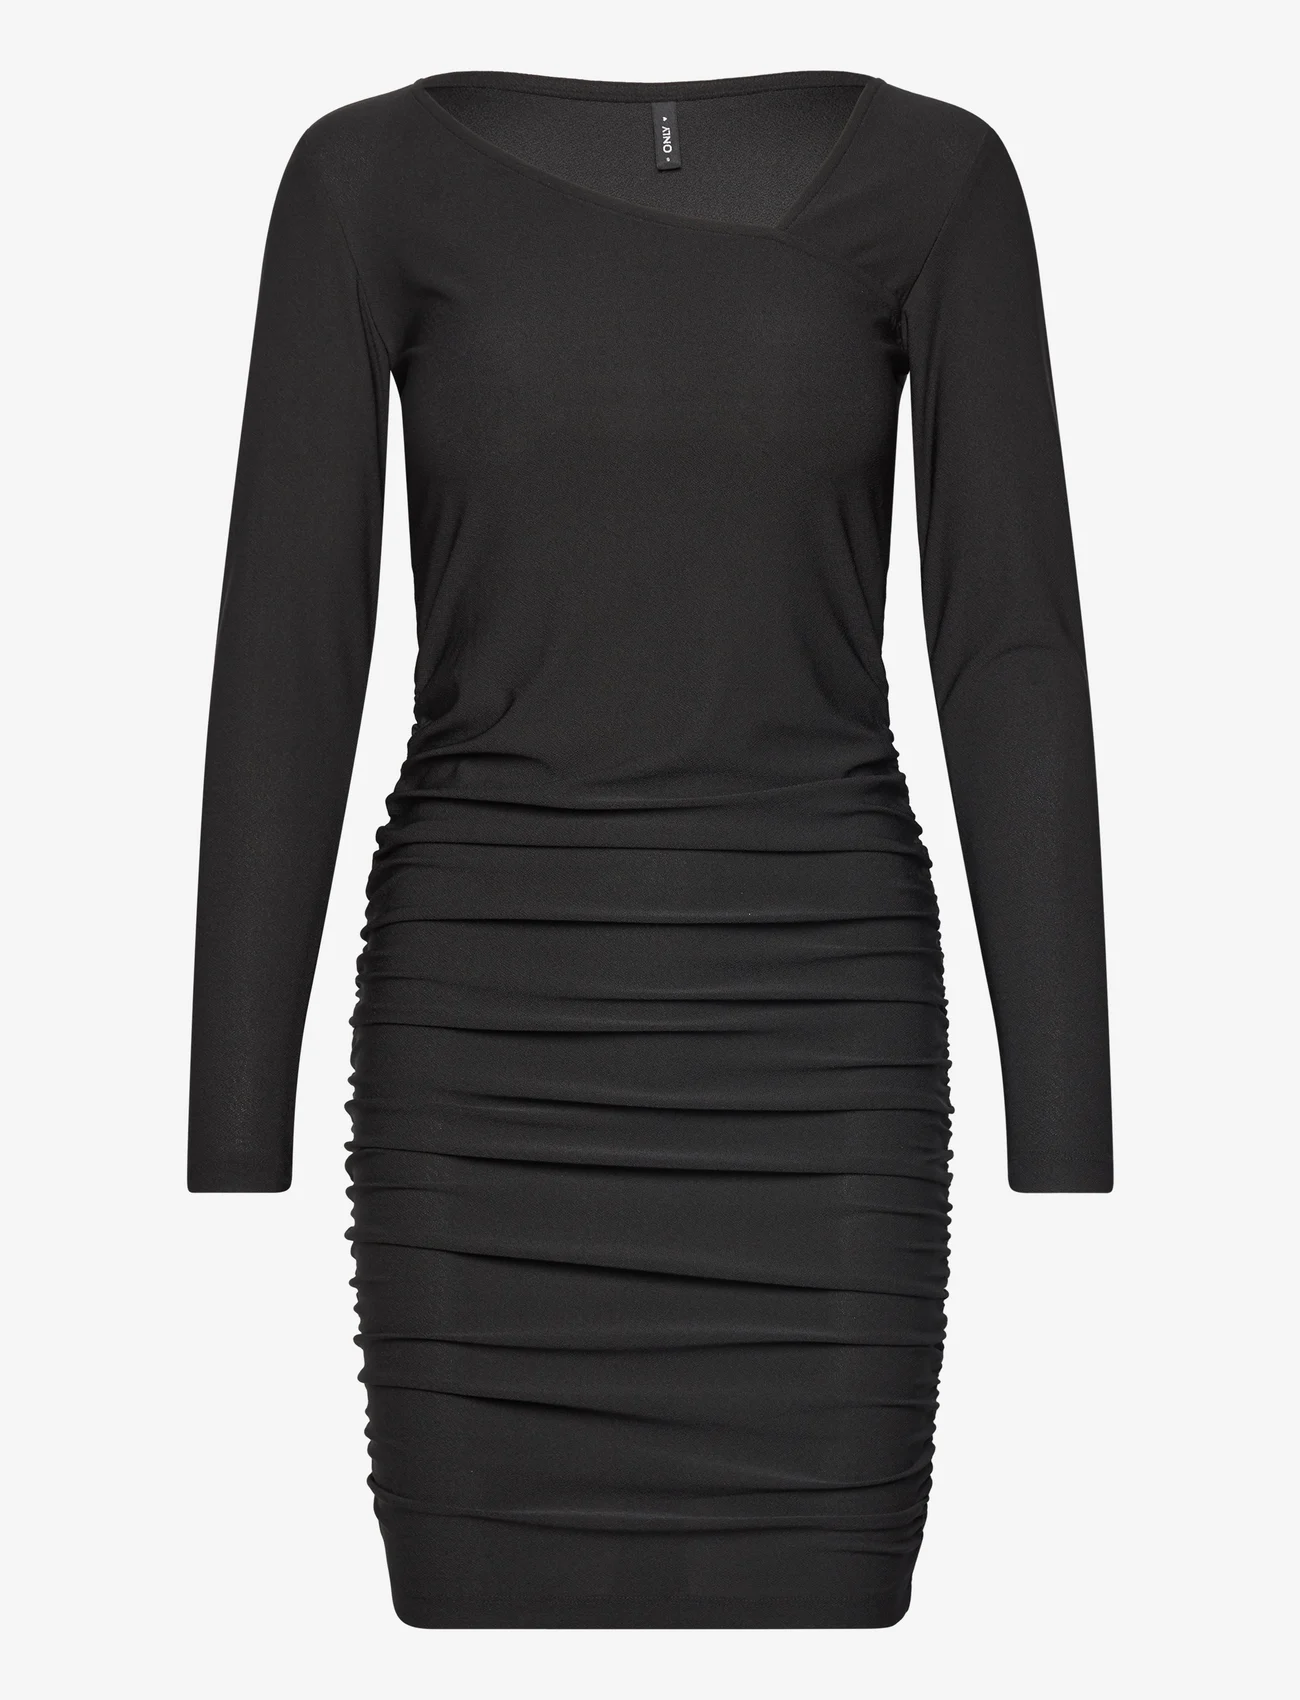 ONLY - ONLSANSA L/S ASSYMETRIC DRESS JRS - laagste prijzen - black - 0